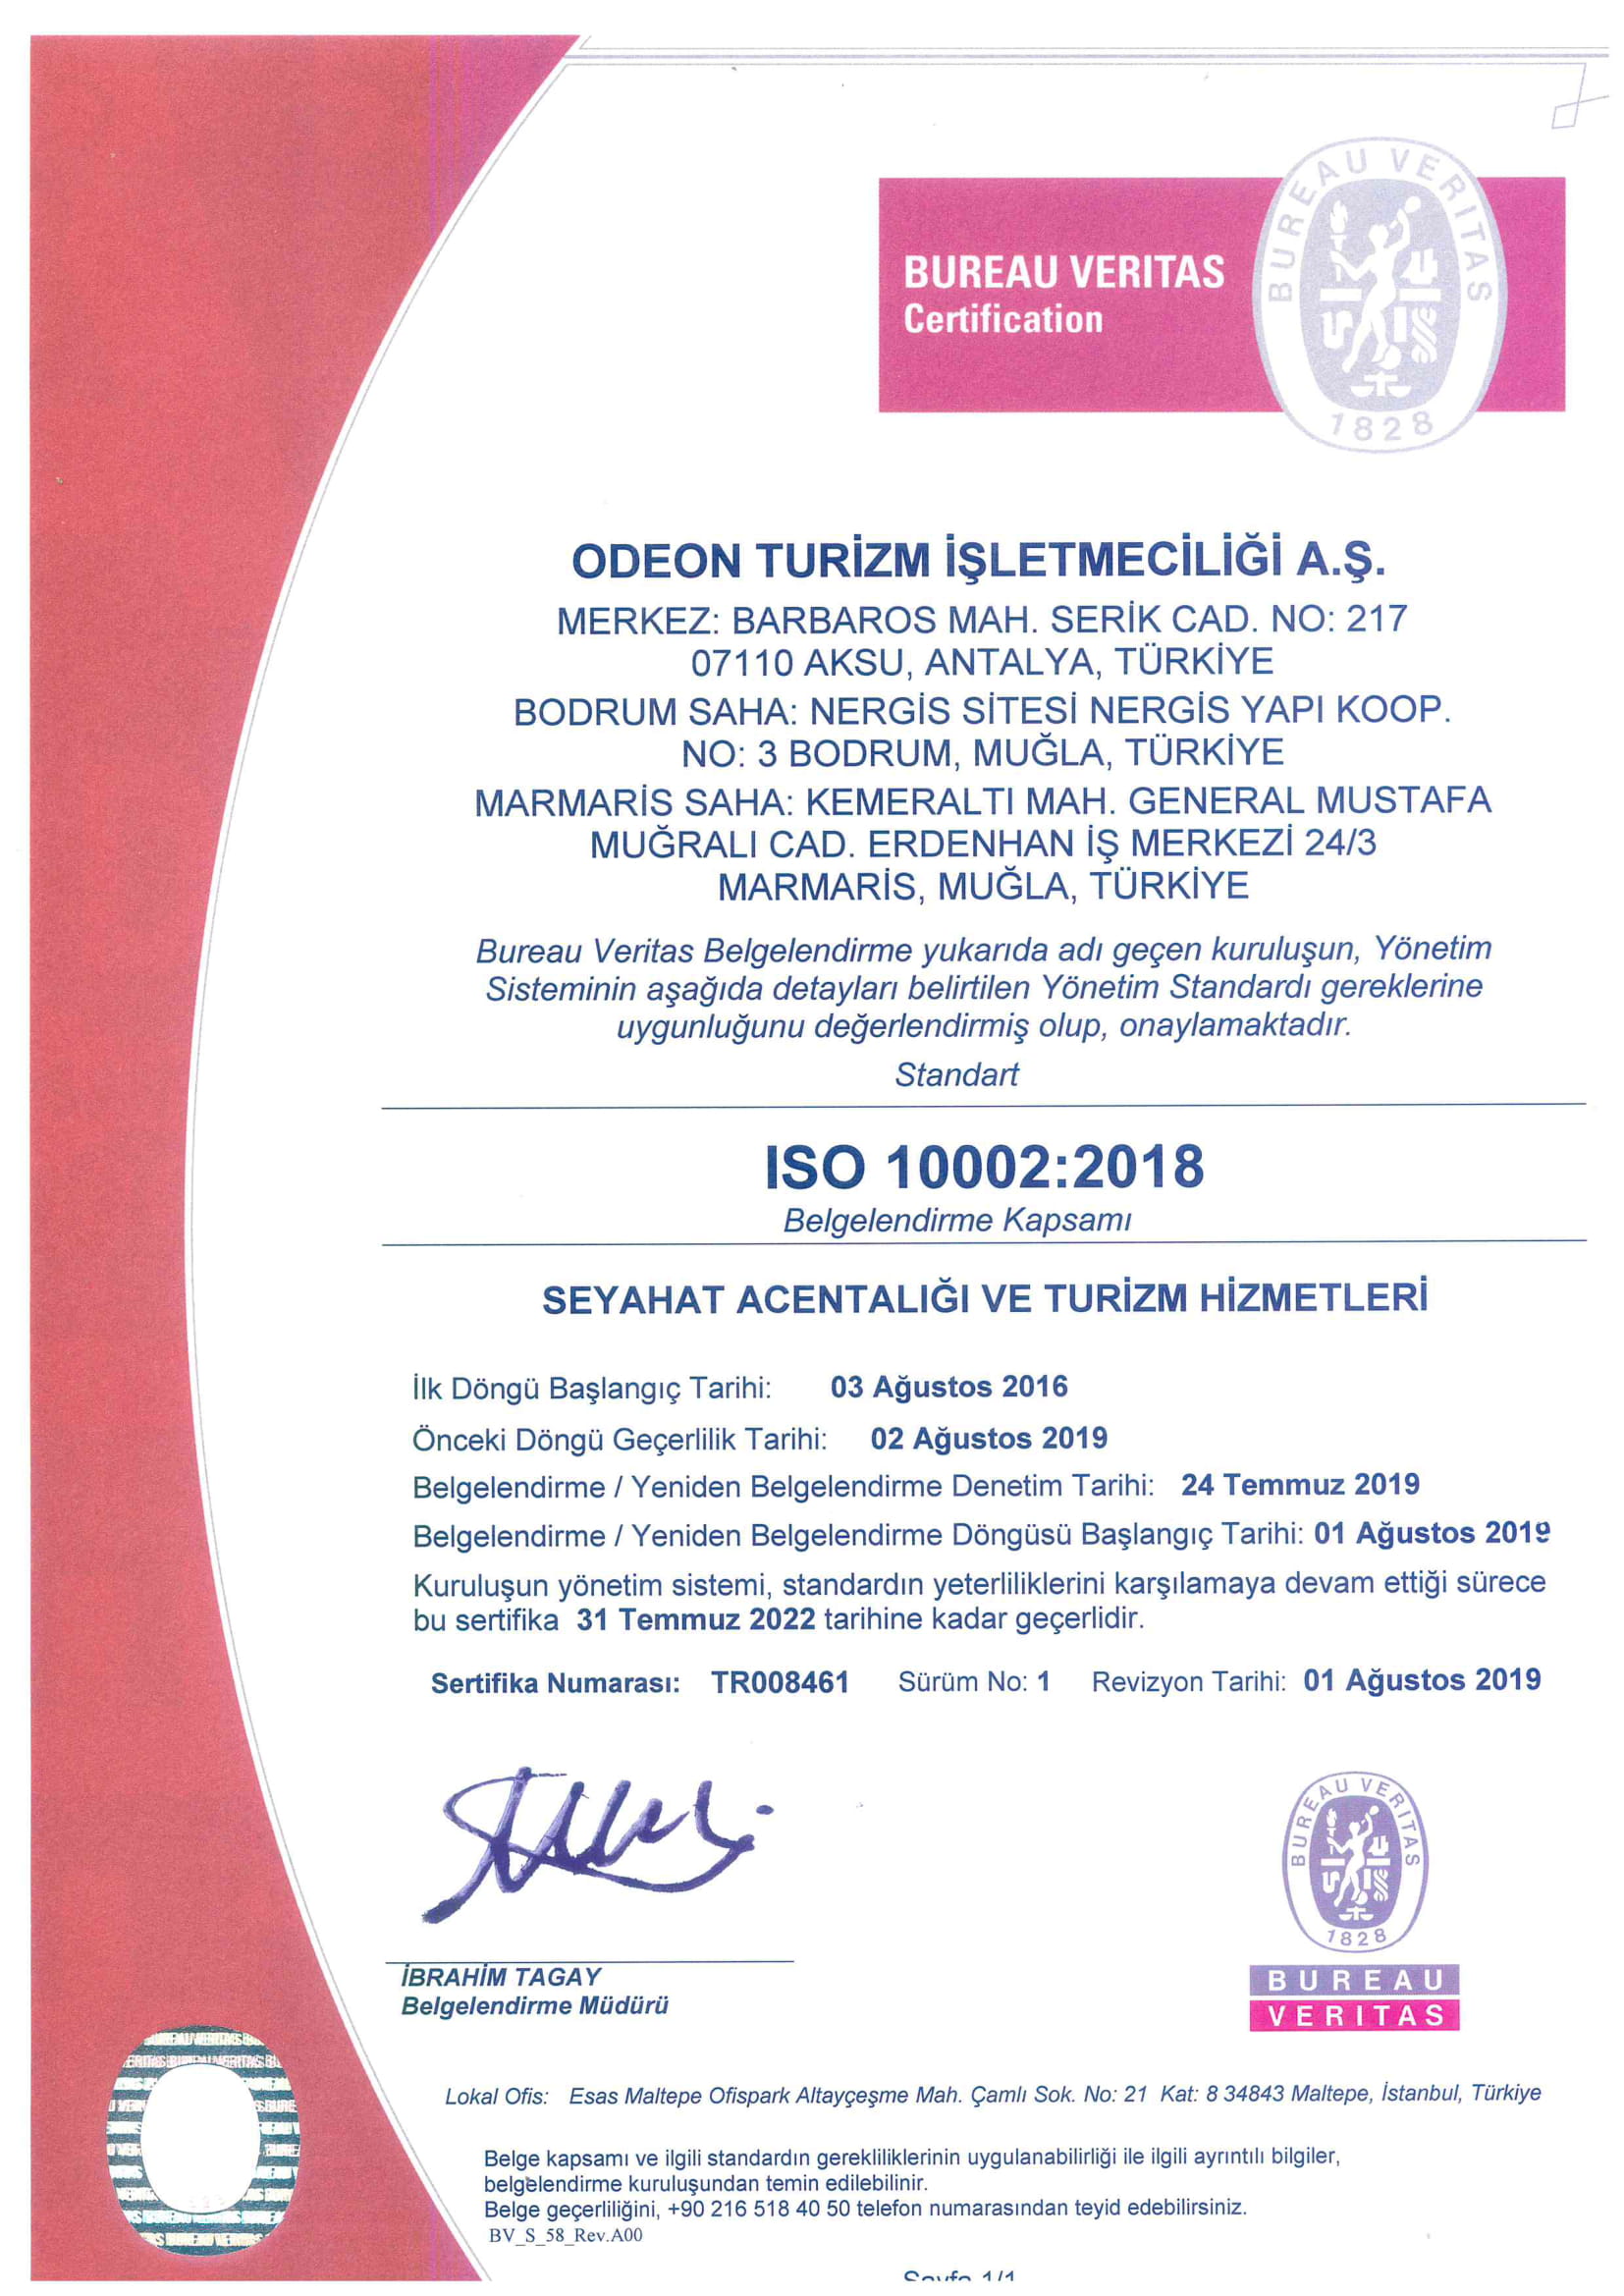 ISO 10002:2018 Şikayet Yönetim Sistemi Sertifikası